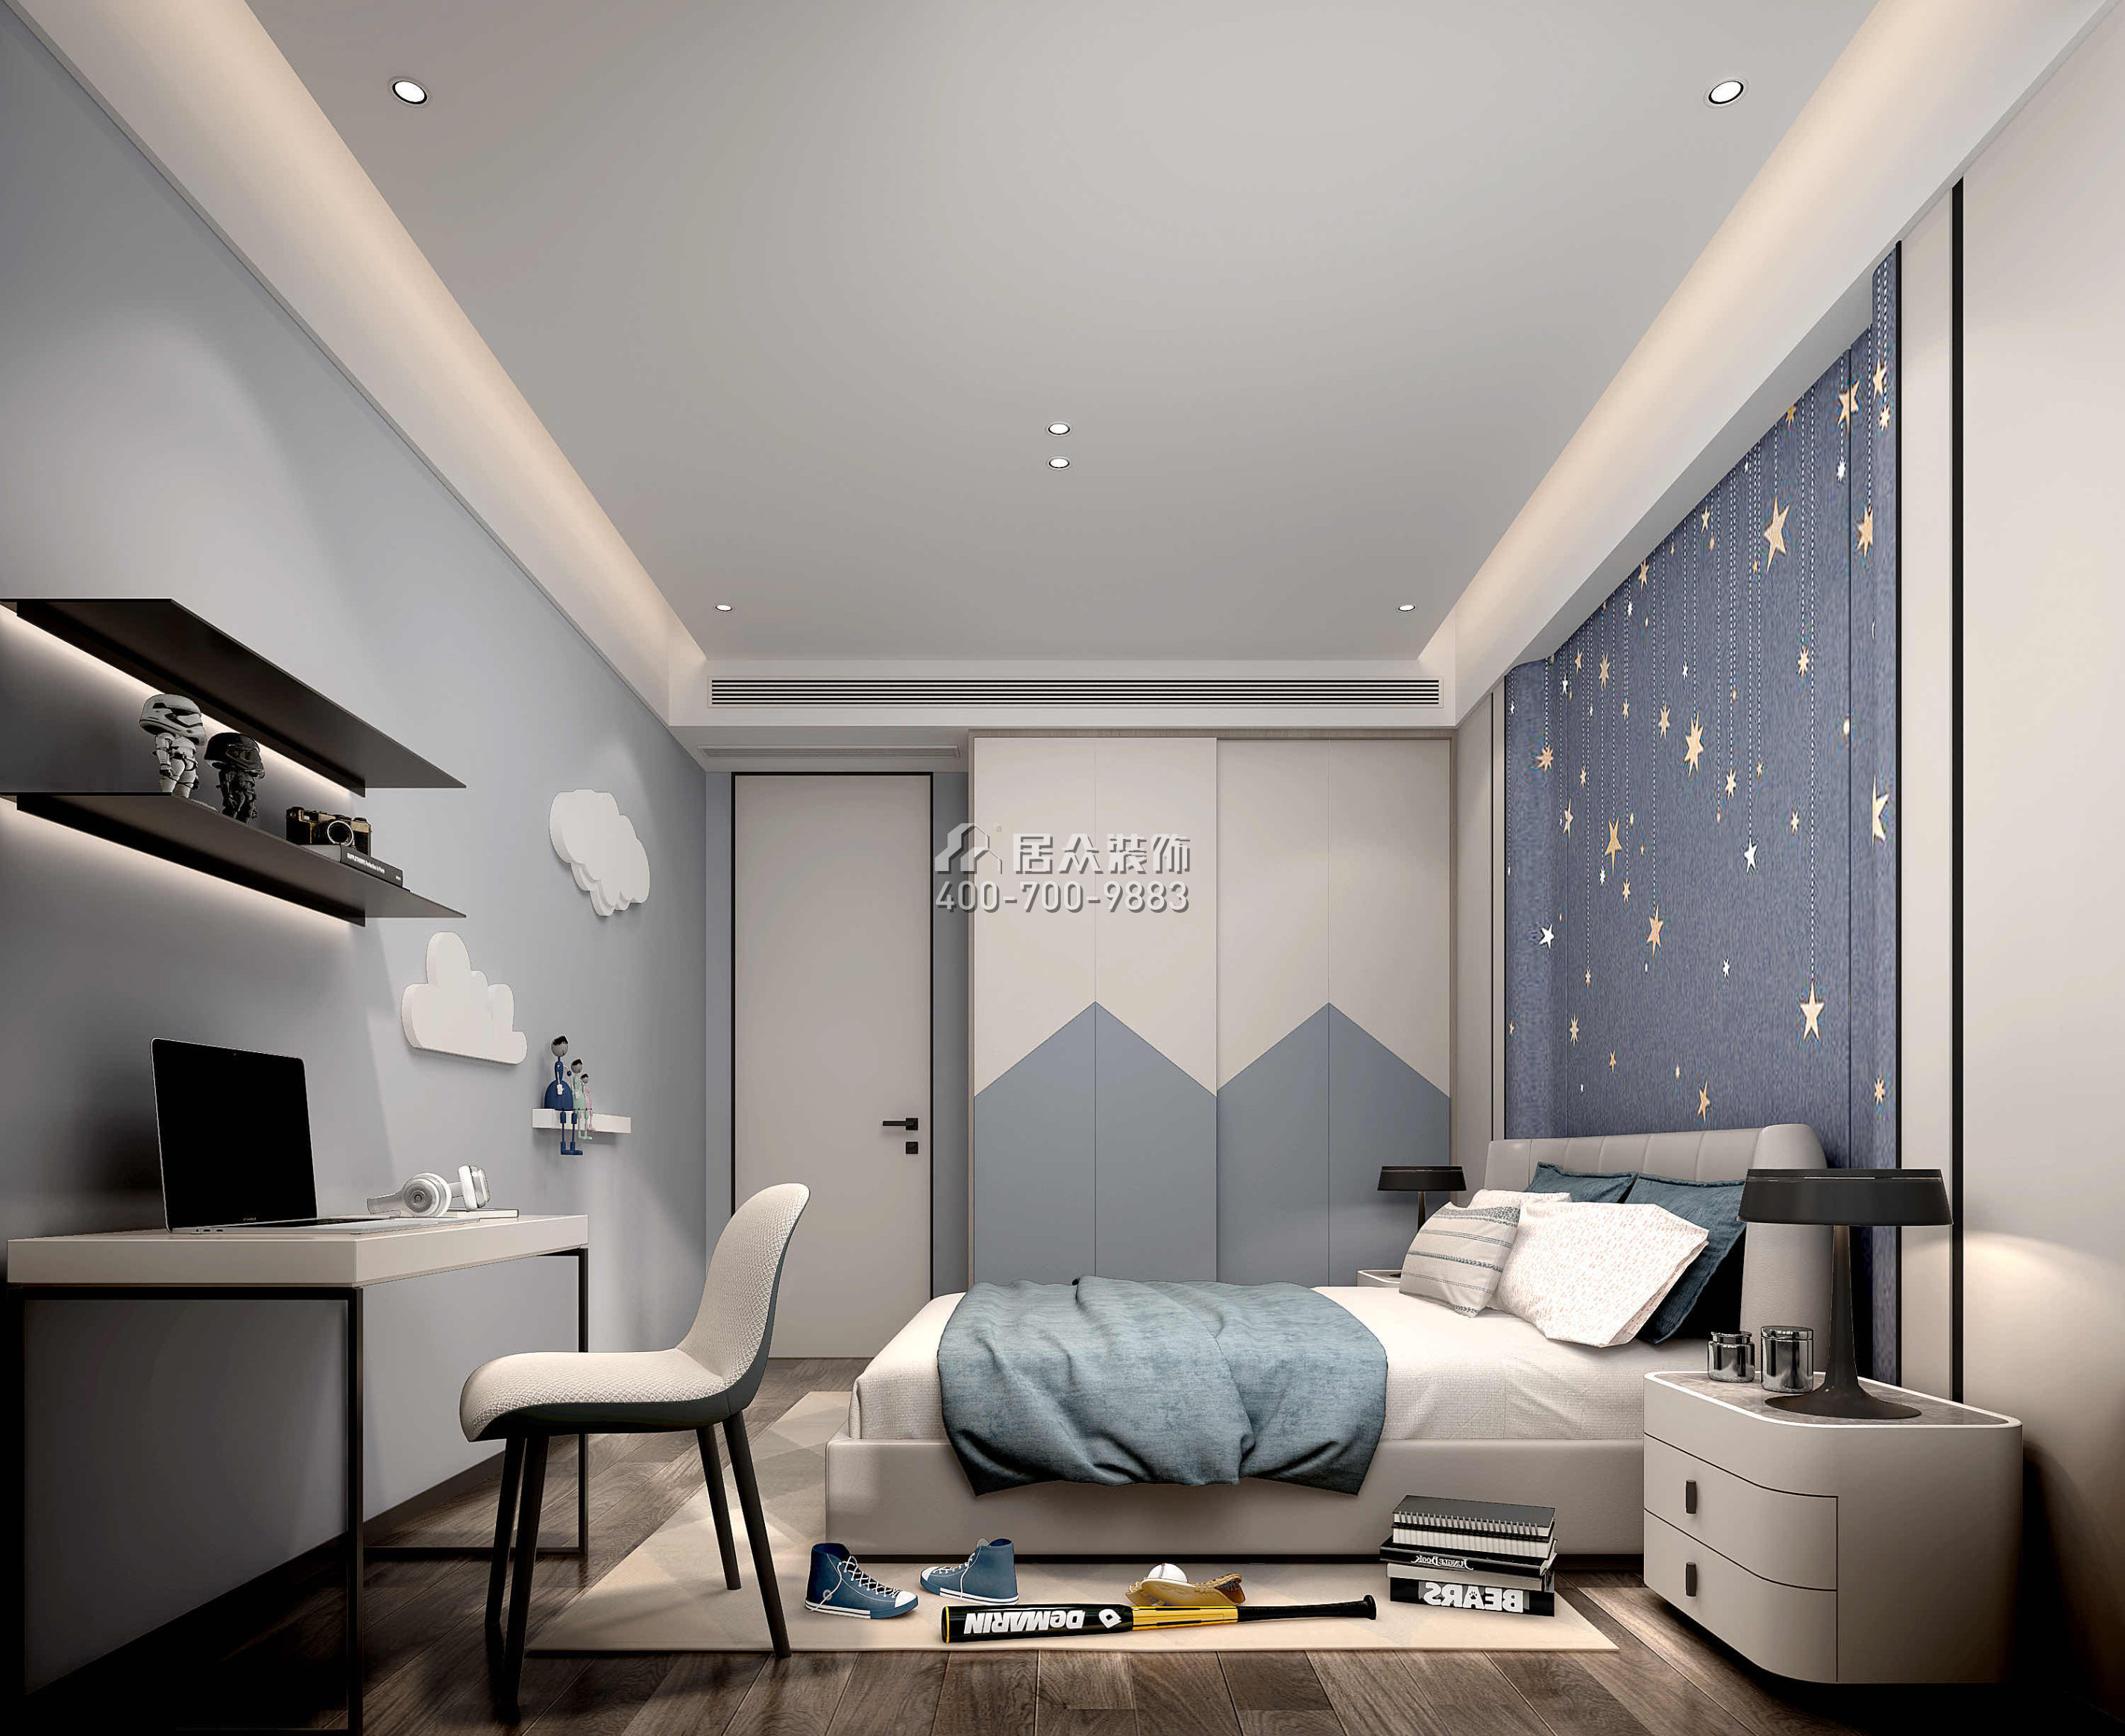 嘉华星际湾238平方米现代简约风格平层户型卧室装修效果图